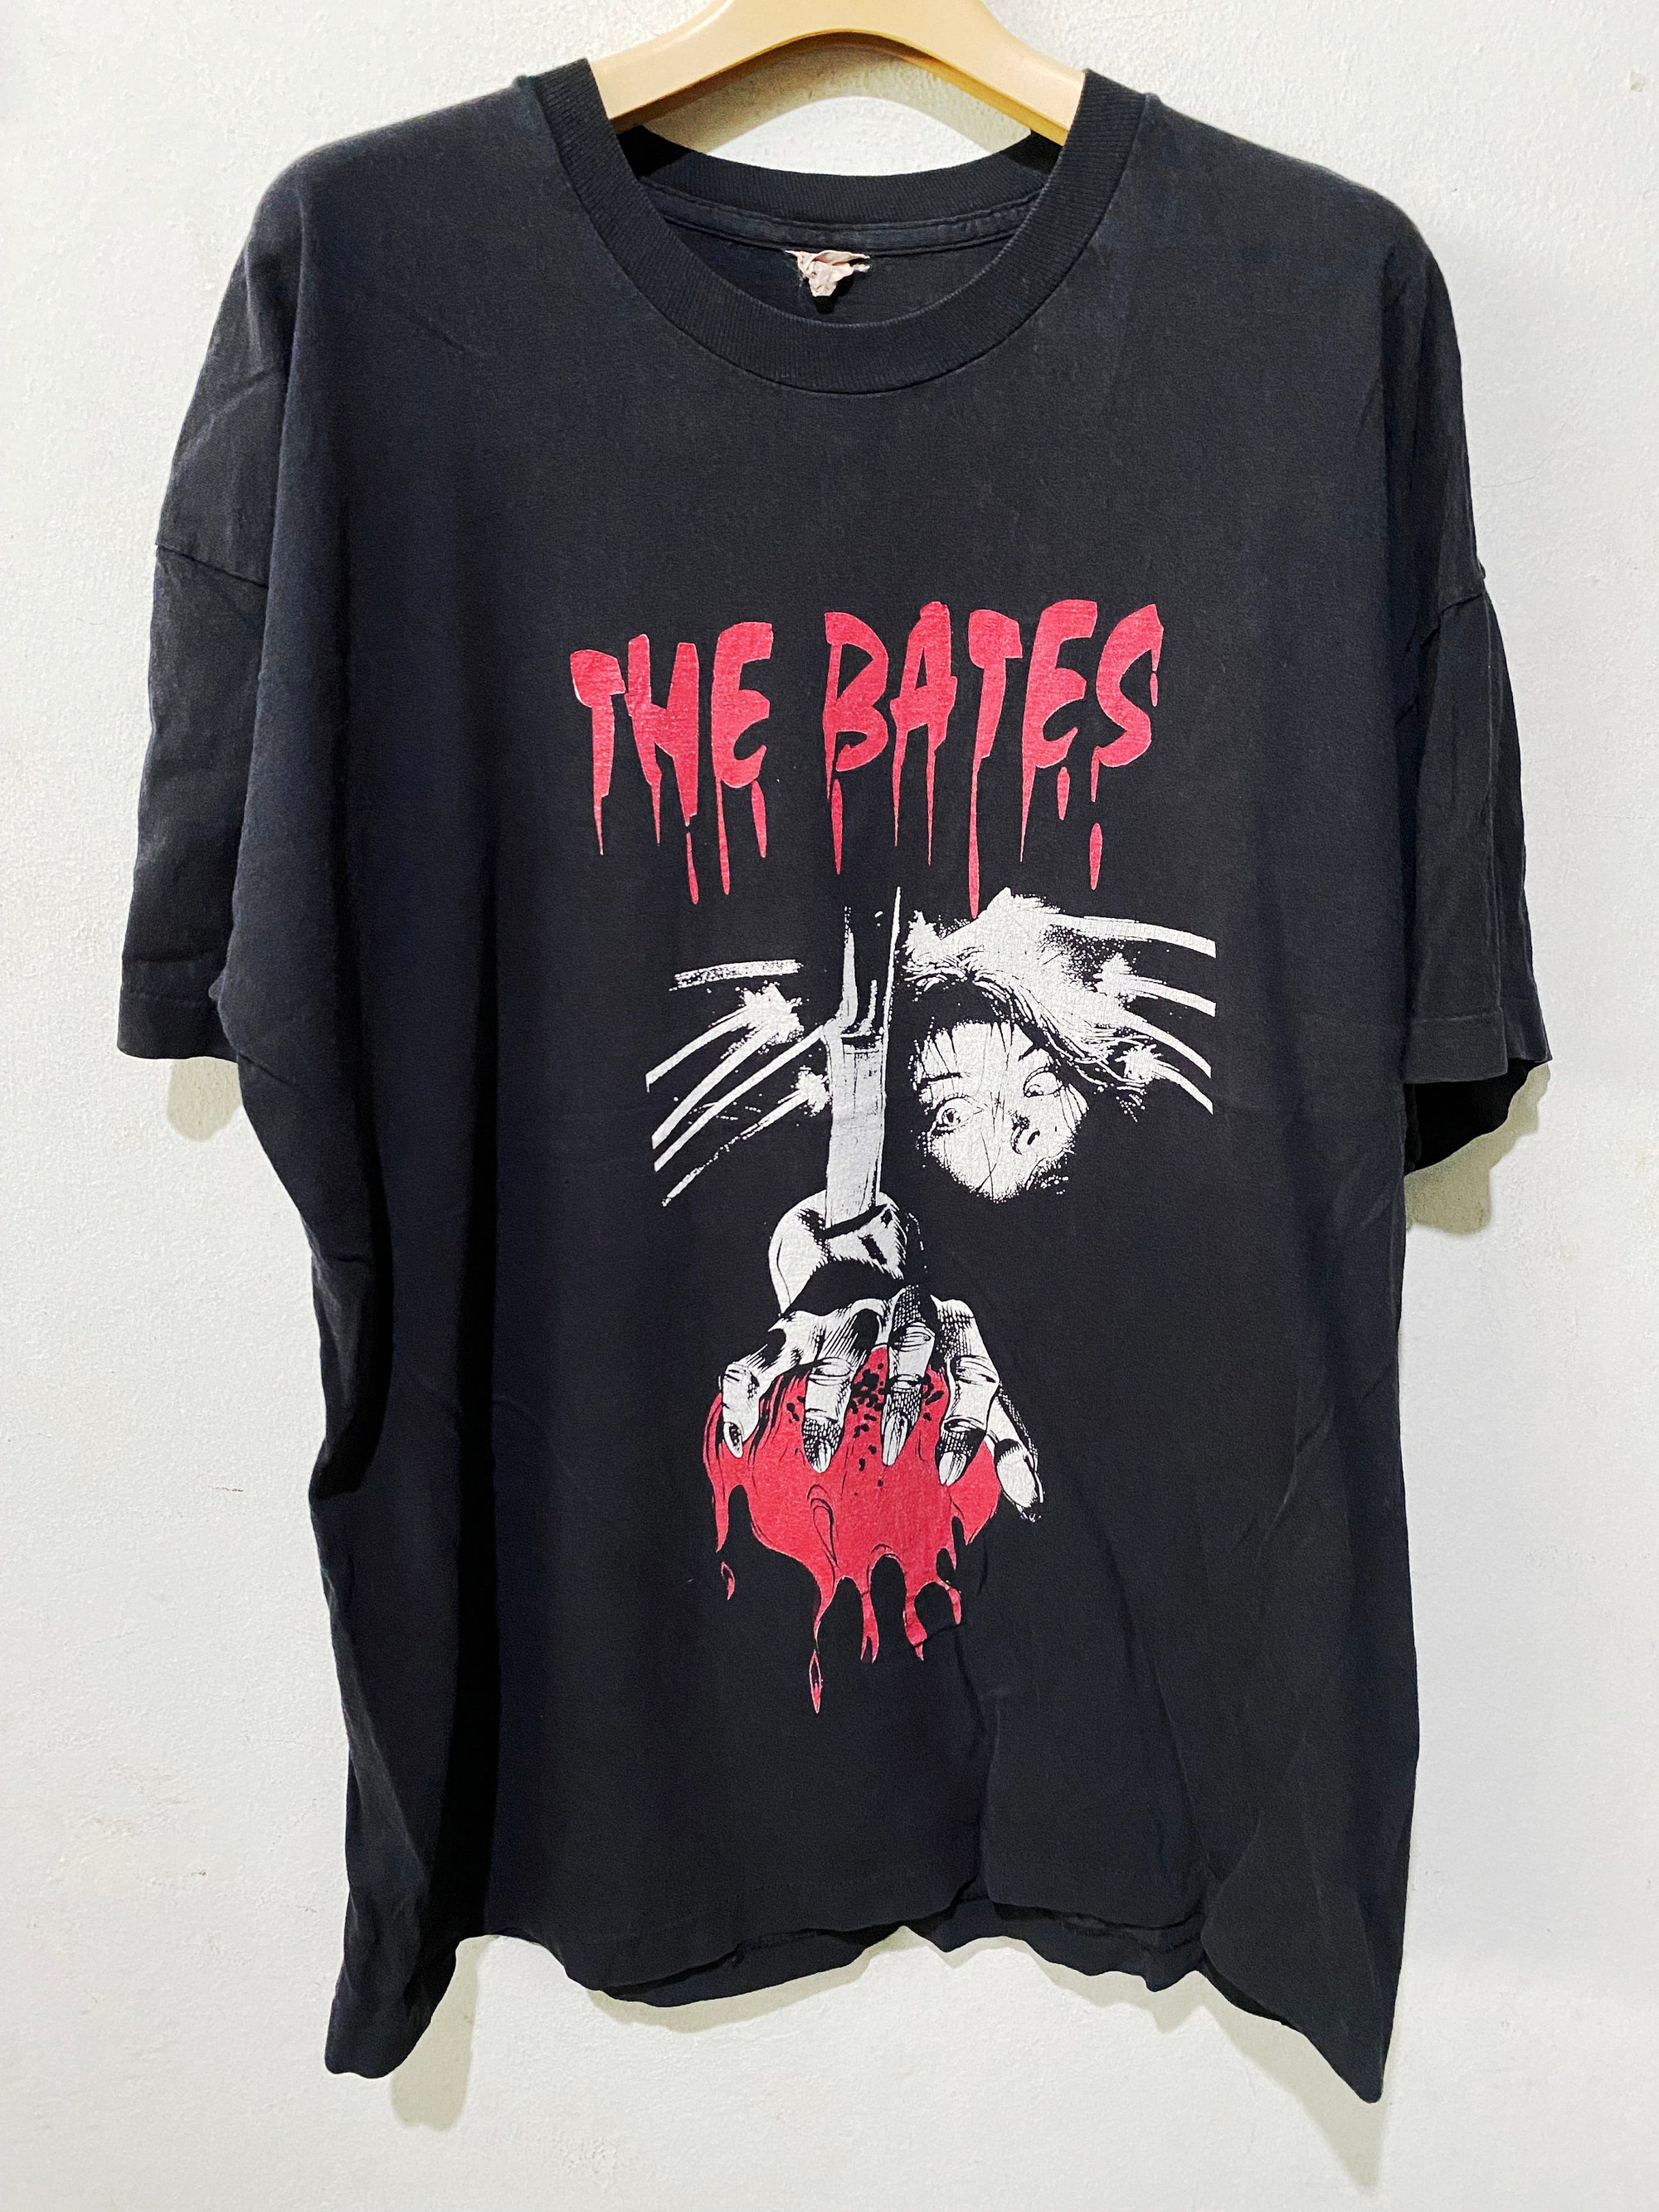 Vintage The Bates Band Shirt